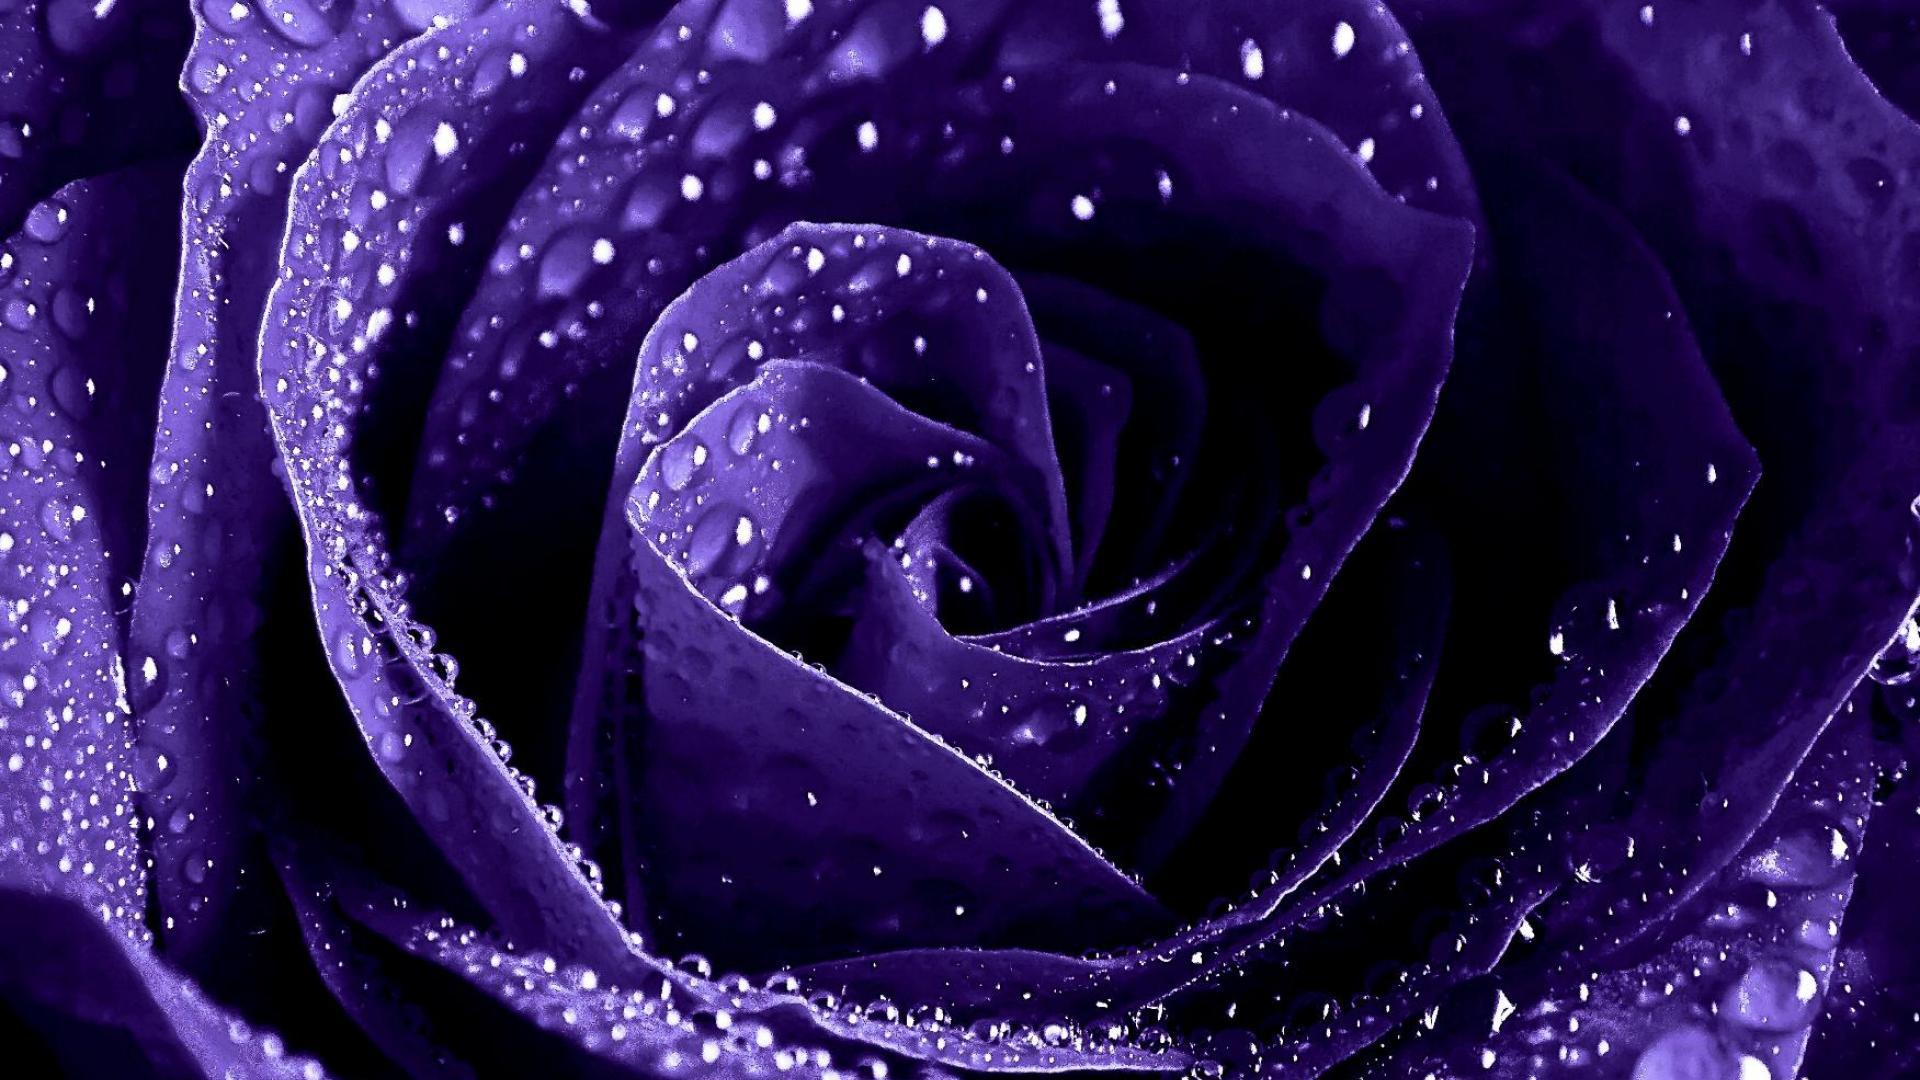 Dark Purple Roses Wallpaper - WallpaperSafari